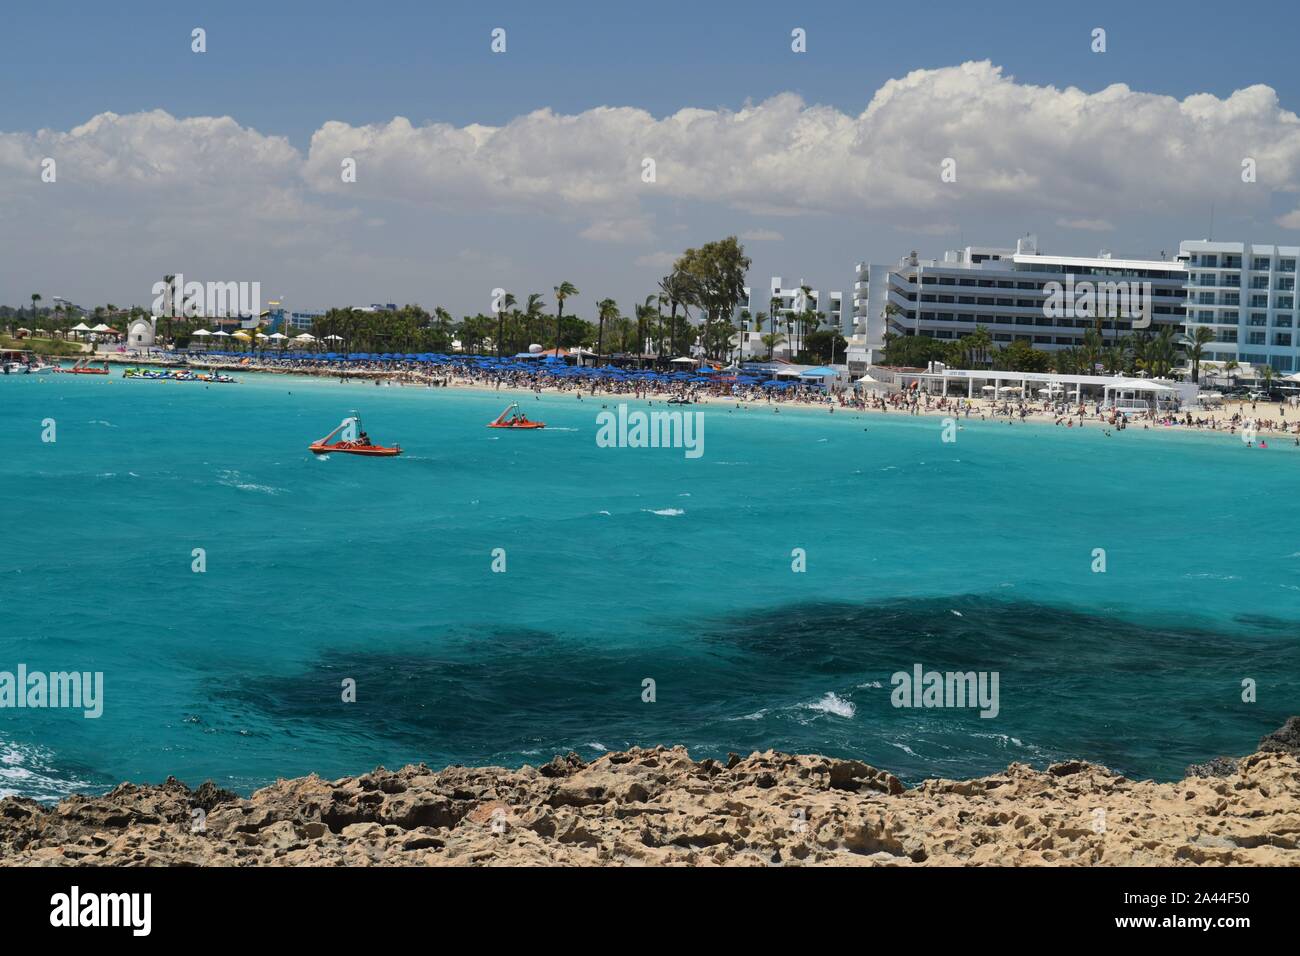 Ayia napa, Cyprus, Nissi Beach, Agia Napa Stock Photo